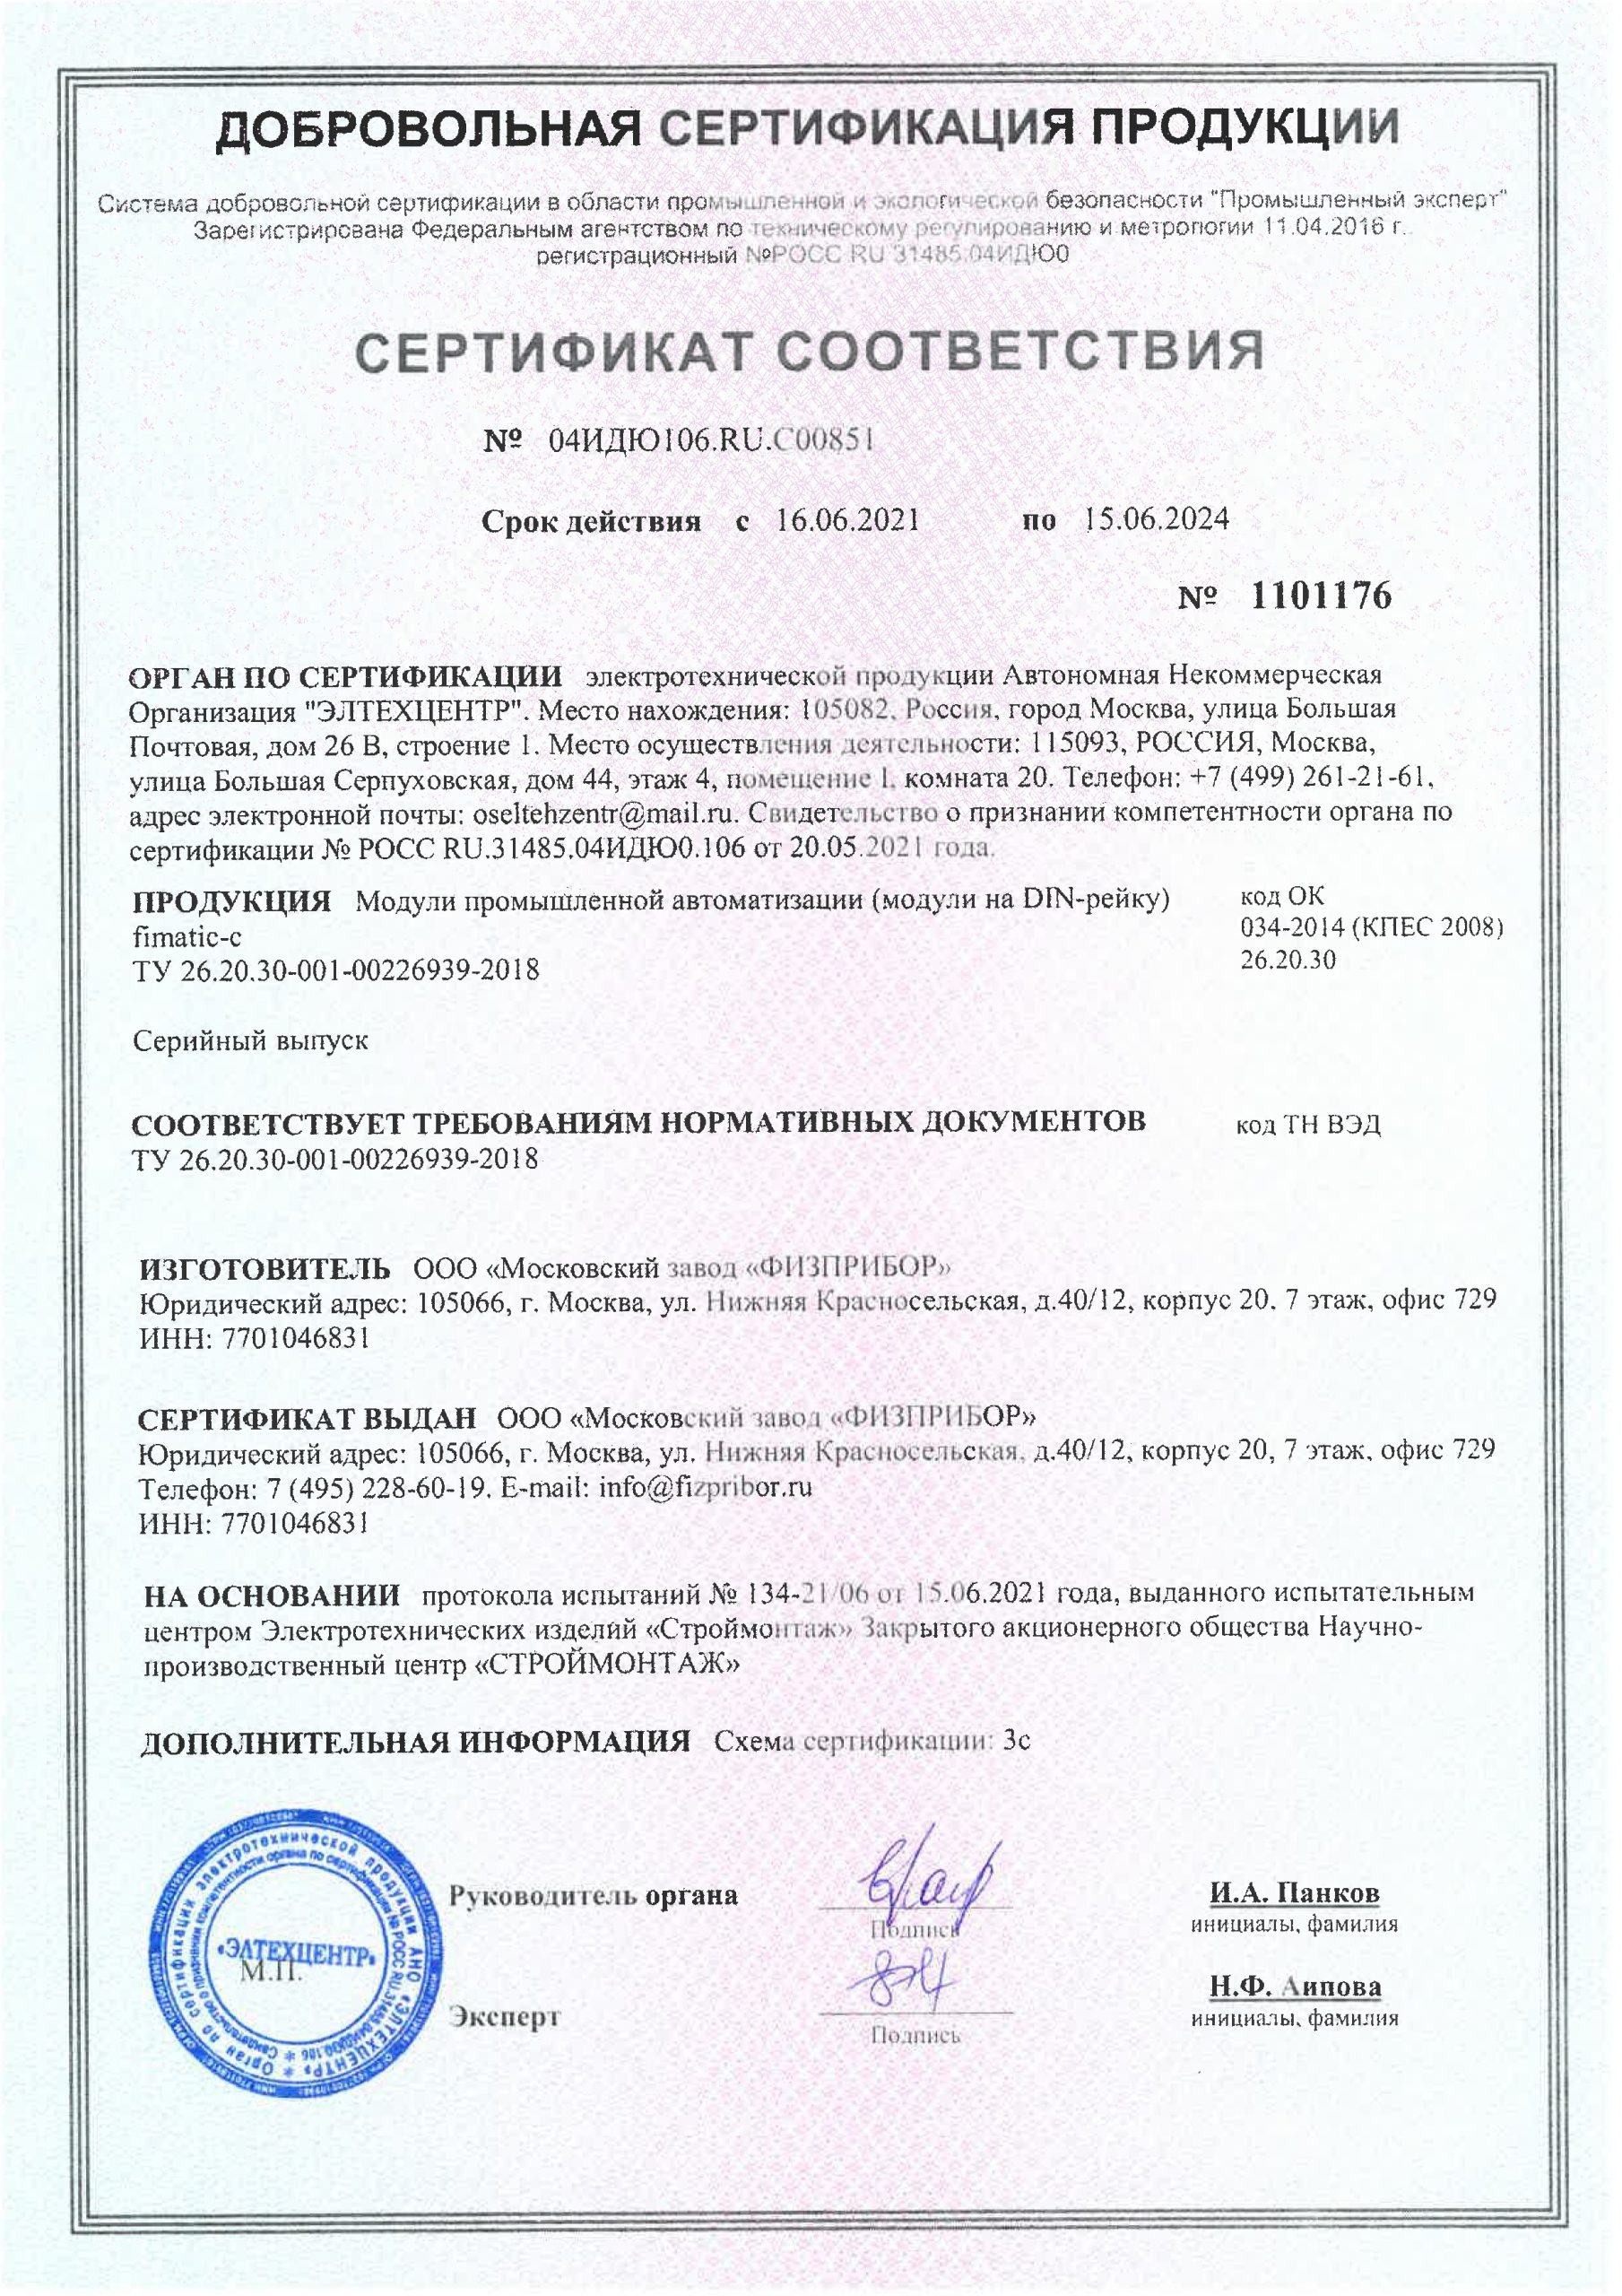 Сертификат соответствия fimatic-c.